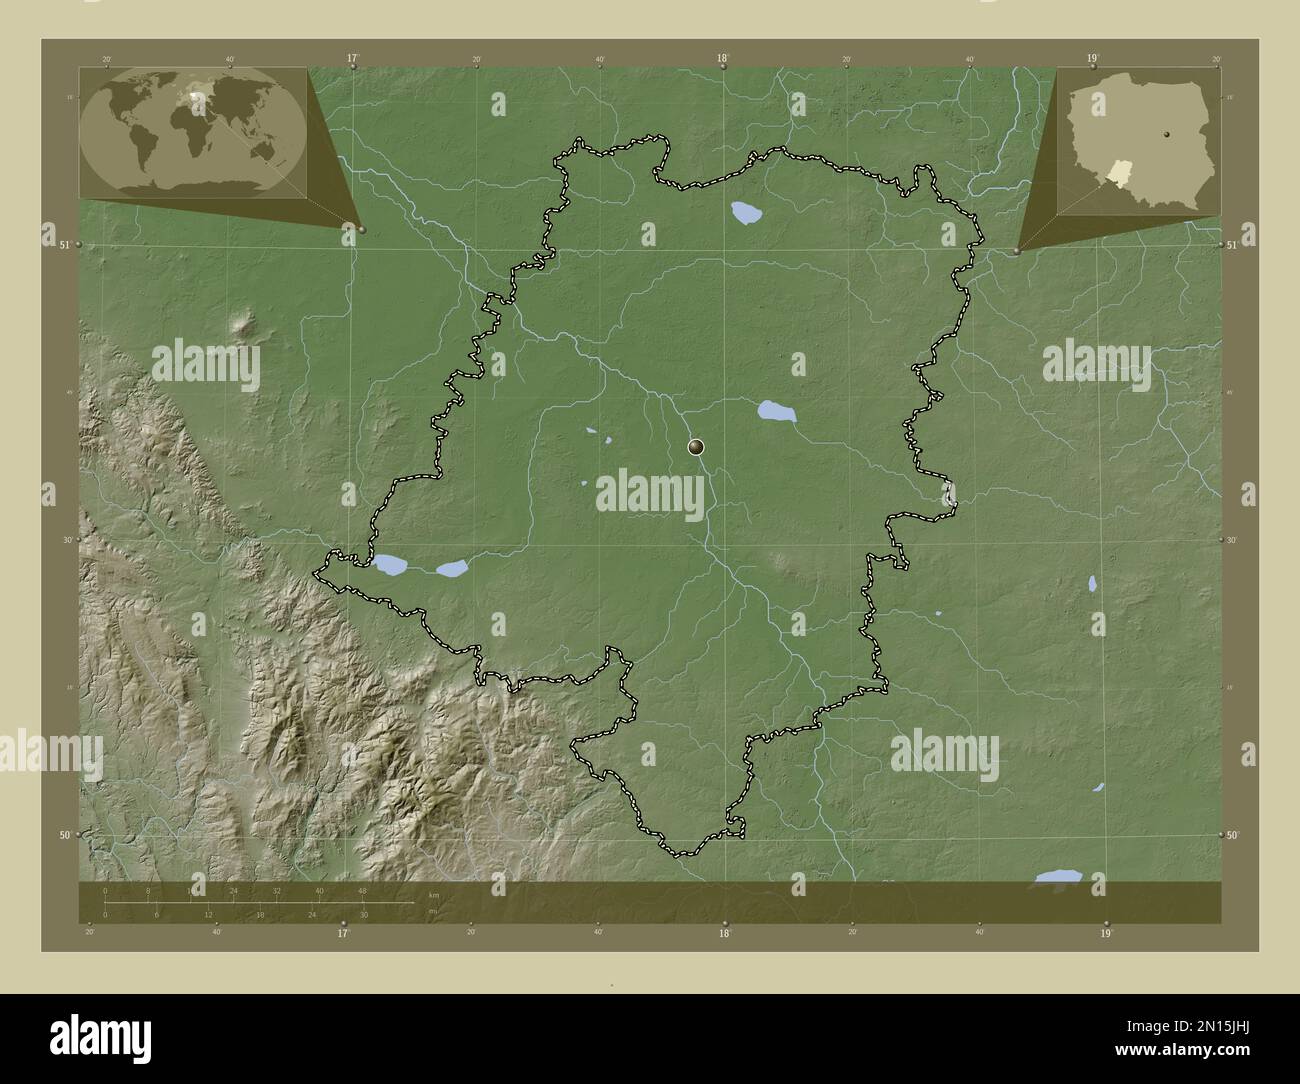 Opolskie, voïvodie|province de Pologne. Carte d'altitude colorée en style wiki avec lacs et rivières. Cartes d'emplacement auxiliaire d'angle Banque D'Images